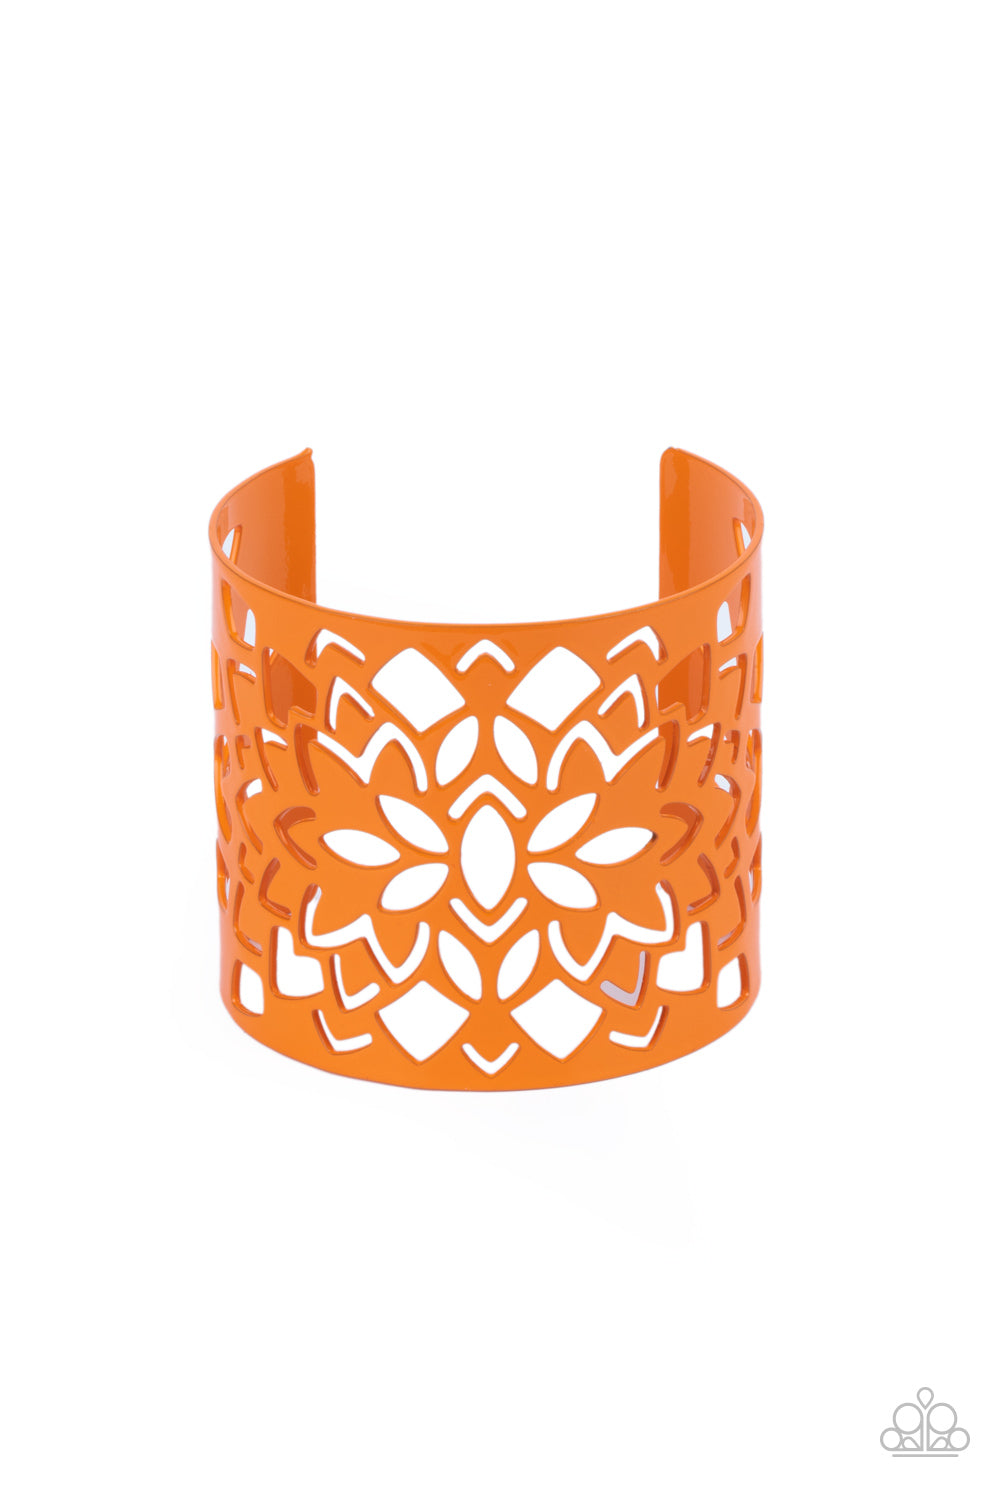 Hacienda Hotspot - orange - Paparazzi bracelet